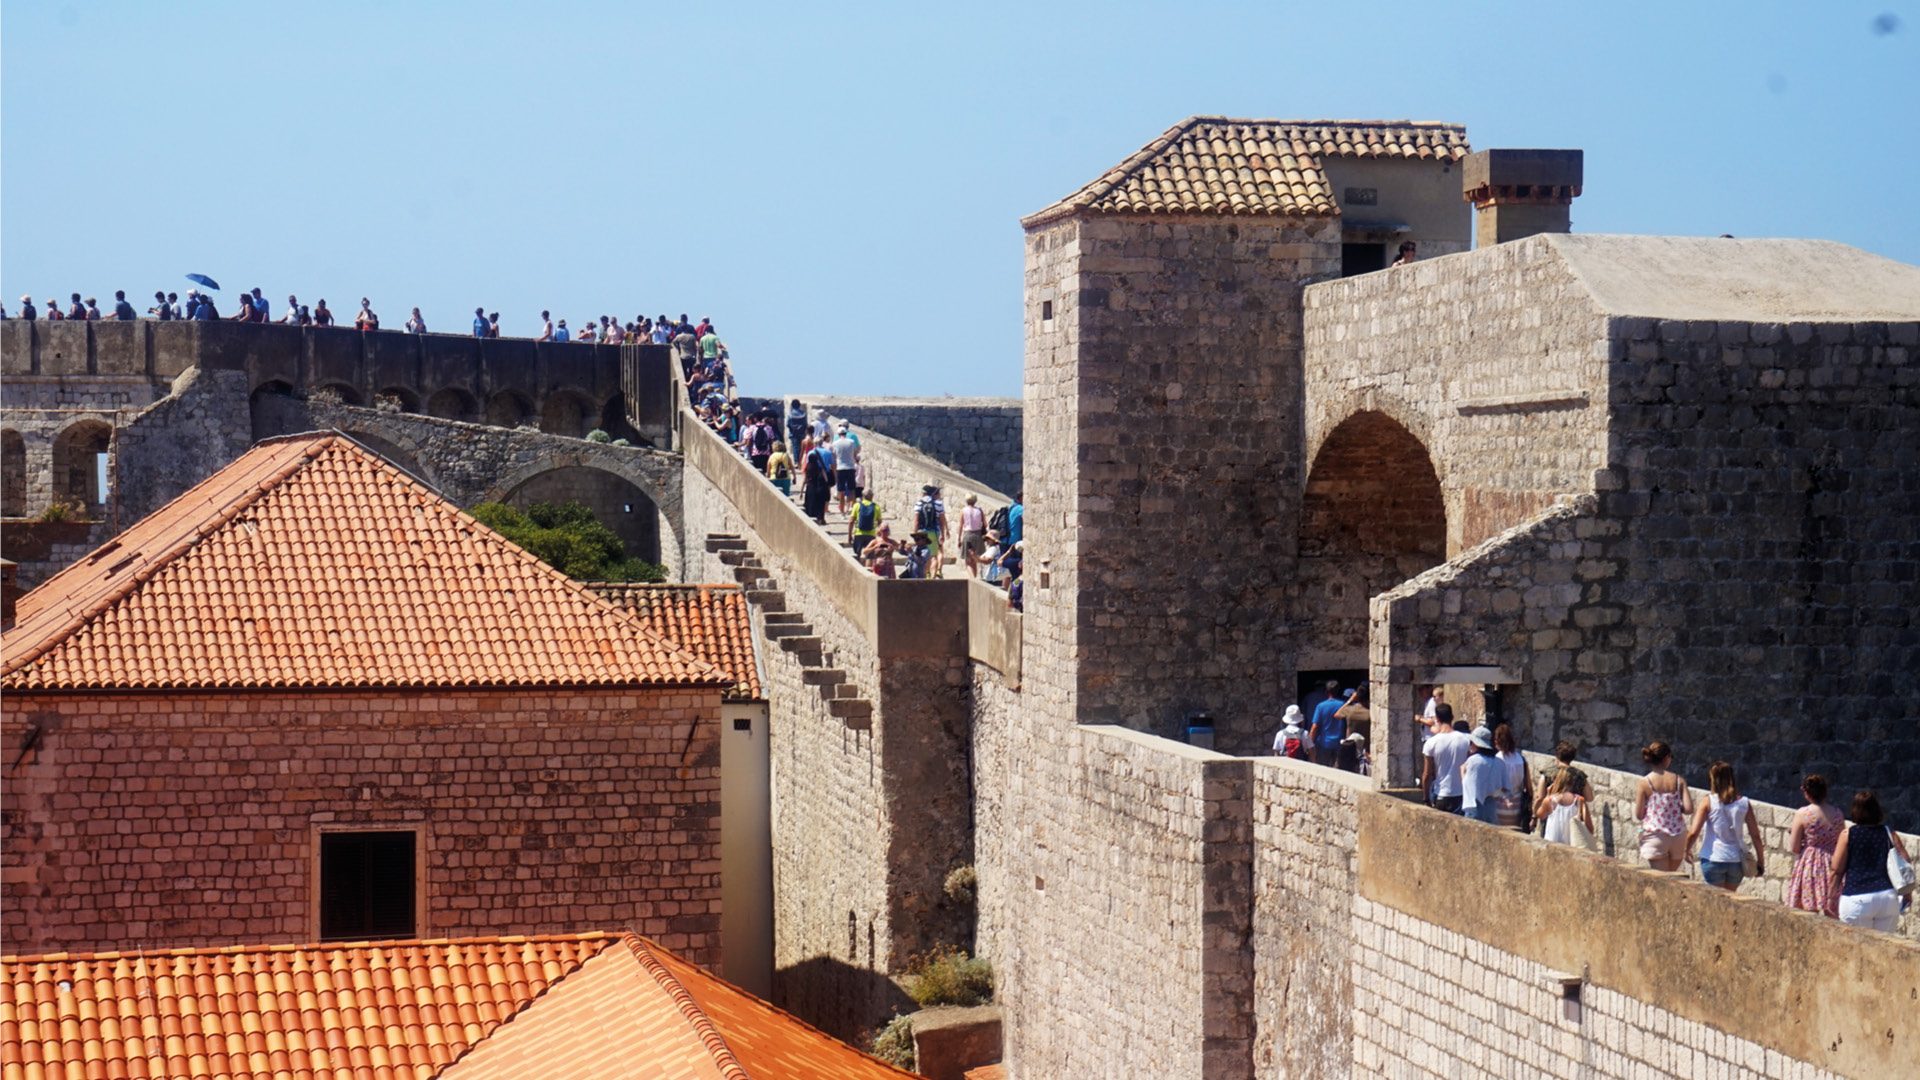 Een bezoek aan Dubrovnik is pas compleet wanneer je een wandeling over de spectaculaire stadsmuren hebt gemaakt. Ze vertellen het geschiedenisverhaal van Dubrovnik en geven je een unieke kijk in het verleden van de stad. De stadsmuren staan al sinds 1979 op de UNESCO Werelderfgoedlijst. Kom meer te weten over de historie van Dubrovnik en haar stadsmuren. Een stukje geschiedenis voor je vertrekt De muren en forten van Dubrovnik hebben door de eeuwen heen een belangrijke verdedigende rol gespeeld voor Dubrovnik. Ook tijdens de meest recente oorlog (1991/1992) liepen de oude stad en de stadsmuren veel schade op. Dubrovnik is in de 7e eeuw gesticht do or de inwoners van het stadje Epidaurum (nu Cavtat), zij waren op de vlucht voor binnenvallende slaven. Ze noemden de stad Ragusa. De Slavische naam voor de stad werd Dubrovnik. Na een tijd onder het Byzantijnse Rijk te hebben geleefd kwam Ragusa onder Venetiaans bestuur. Uiteindelijk werd Ragusa, bij de Vrede van Zadar (1359), onderdeel van Hongarije. Ragusa werd wel volledig zelf besturend en werd dus een vrije stadstaat. Gevolg: De stad werd ommuurd en voorzien van twee havens in Ragusa en Cavtat. De republiek breidde haar grondgebied steeds meer uit. Een einde aan de bloeiperiode van Ragusa Het hoogtepunt van de macht werd bereikt in de 15e en 16e eeuw. De zeemacht was op dat moment net zo machtig als die van Venetië en andere Italiaanse zeestaten. Echter kwam hier ook het keerpunt. Ragusa ondersteunde het Ottomaanse Rijk tegen de Portugezen tijdens de Slag van Diu. Deze slag werd verloren door het Ottomaanse Rijk, waardoor de handelsroute zich verplaatste van de Middellandse Zee naar Indië (dat was in handen van Portugal). De handelscrisis en een rampzalige aardbeving in 1667 maakten een einde aan de bloeiperiode van Ragusa. In 1699 bij de Vrede van Karlowitz werden er twee kleine grensgebieden van Ragusa geschonken aan het Ottomaanse Rijk. Dit om op die manier te voorkomen dat Venetië (in die tijd de grootste bedreiging voor Ragusa) via land Ragusa kon aanvallen. Als gevolg van dit verdrag maakt het kustplaatsje Neum tegenwoordig nog steeds deel uit van Bosnië en Herzegovina. Momenteel is dit plaatsje dus nog steeds een onderbreking in het Kroatische grondgebied. Tijdens de Kroatische onafhankelijkheidsoorlog Ragusa gaf zich over aan de Fransen in 1806 om een Russisch-Montenegrijnse belegering te beëindigen. Hierdoor werd de stad gered, maar in 1808 schafte de maarschalk Marmont de republiek af. Na WO I werd het gebied een deel van Joegoslavië. In 1991, gedurende de Kroatische onafhankelijkheidsoorlog, werd het historisch centrum en de stadsmuren zwaar beschadigd door het Joegoslavische leger. Door het Joegoslavië Tribunaal werd deze daad gekwalificeerd als oorlogsmisdaad. De commandant Pavle Strugar werd dan ook veroordeeld tot 7,5 jaar gevangenisstraf. Praktische informatie Een wandeling duurt ongeveer 2 tot 3 uur, afhankelijk van het aantal stops dat je zelf inlast. Onderweg zijn er namelijk een aantal cafés waar je wat kan drinken. De lengte van de hele tocht is ongeveer 2 kilometer. Smeer je goed in Aangezien je over stadsmuren loopt kom je weinig schaduwplekken tegen. Zorg dus zeker dat je zonnebrand en water meeneemt. Op een aantal punten vind je restaurantjes waar je iets kan drinken. Op hete zomerdagen is de beste tijd voor een wandeling ‘s ochtends rond 11 uur of ‘s middags na 5 uur. Openingstijden en entreeticket Dubrovnik stadsmuren 2017/2018 Januari t/m februari: 10u t/m 15u Maart t/m 31 maart: 9u t/m 15u April t/m 31 mei: 9u t/m 18:30u Juni t/m 31 juli: 8u t/m 19:30u Augustus t/m 15 september: 8u t/m 19u 16 september t/m 31 oktober: 9u t/m 18u November t/m 31 december: 9u t/m 15u Entreeticket: Volwassenen: 150 HRK (ongeveer 20 euro) Kinderen: 50 HRK (ongeveer 7 euro) Kinderen onder de 5 jaar gratis De hoofdingang vind je bij de Pile Gate.